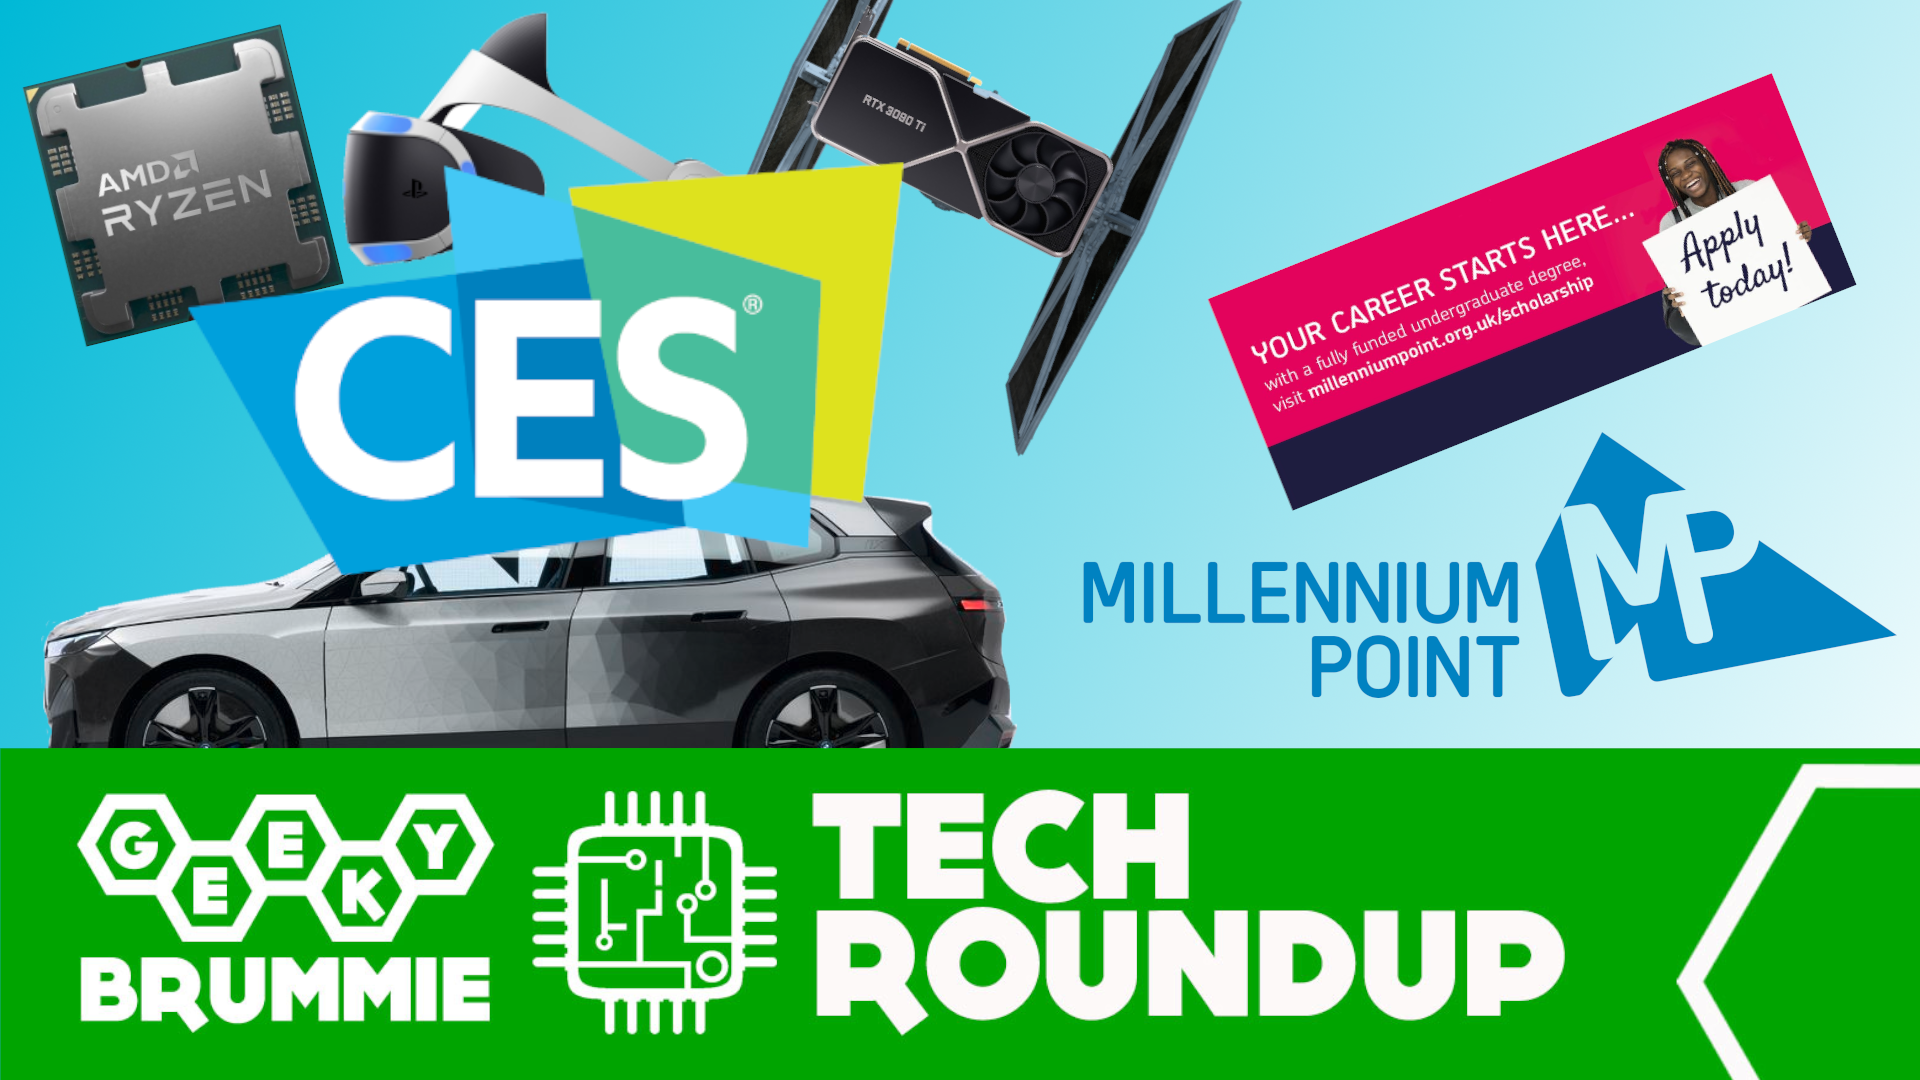 Tech Roundup – CES Who?